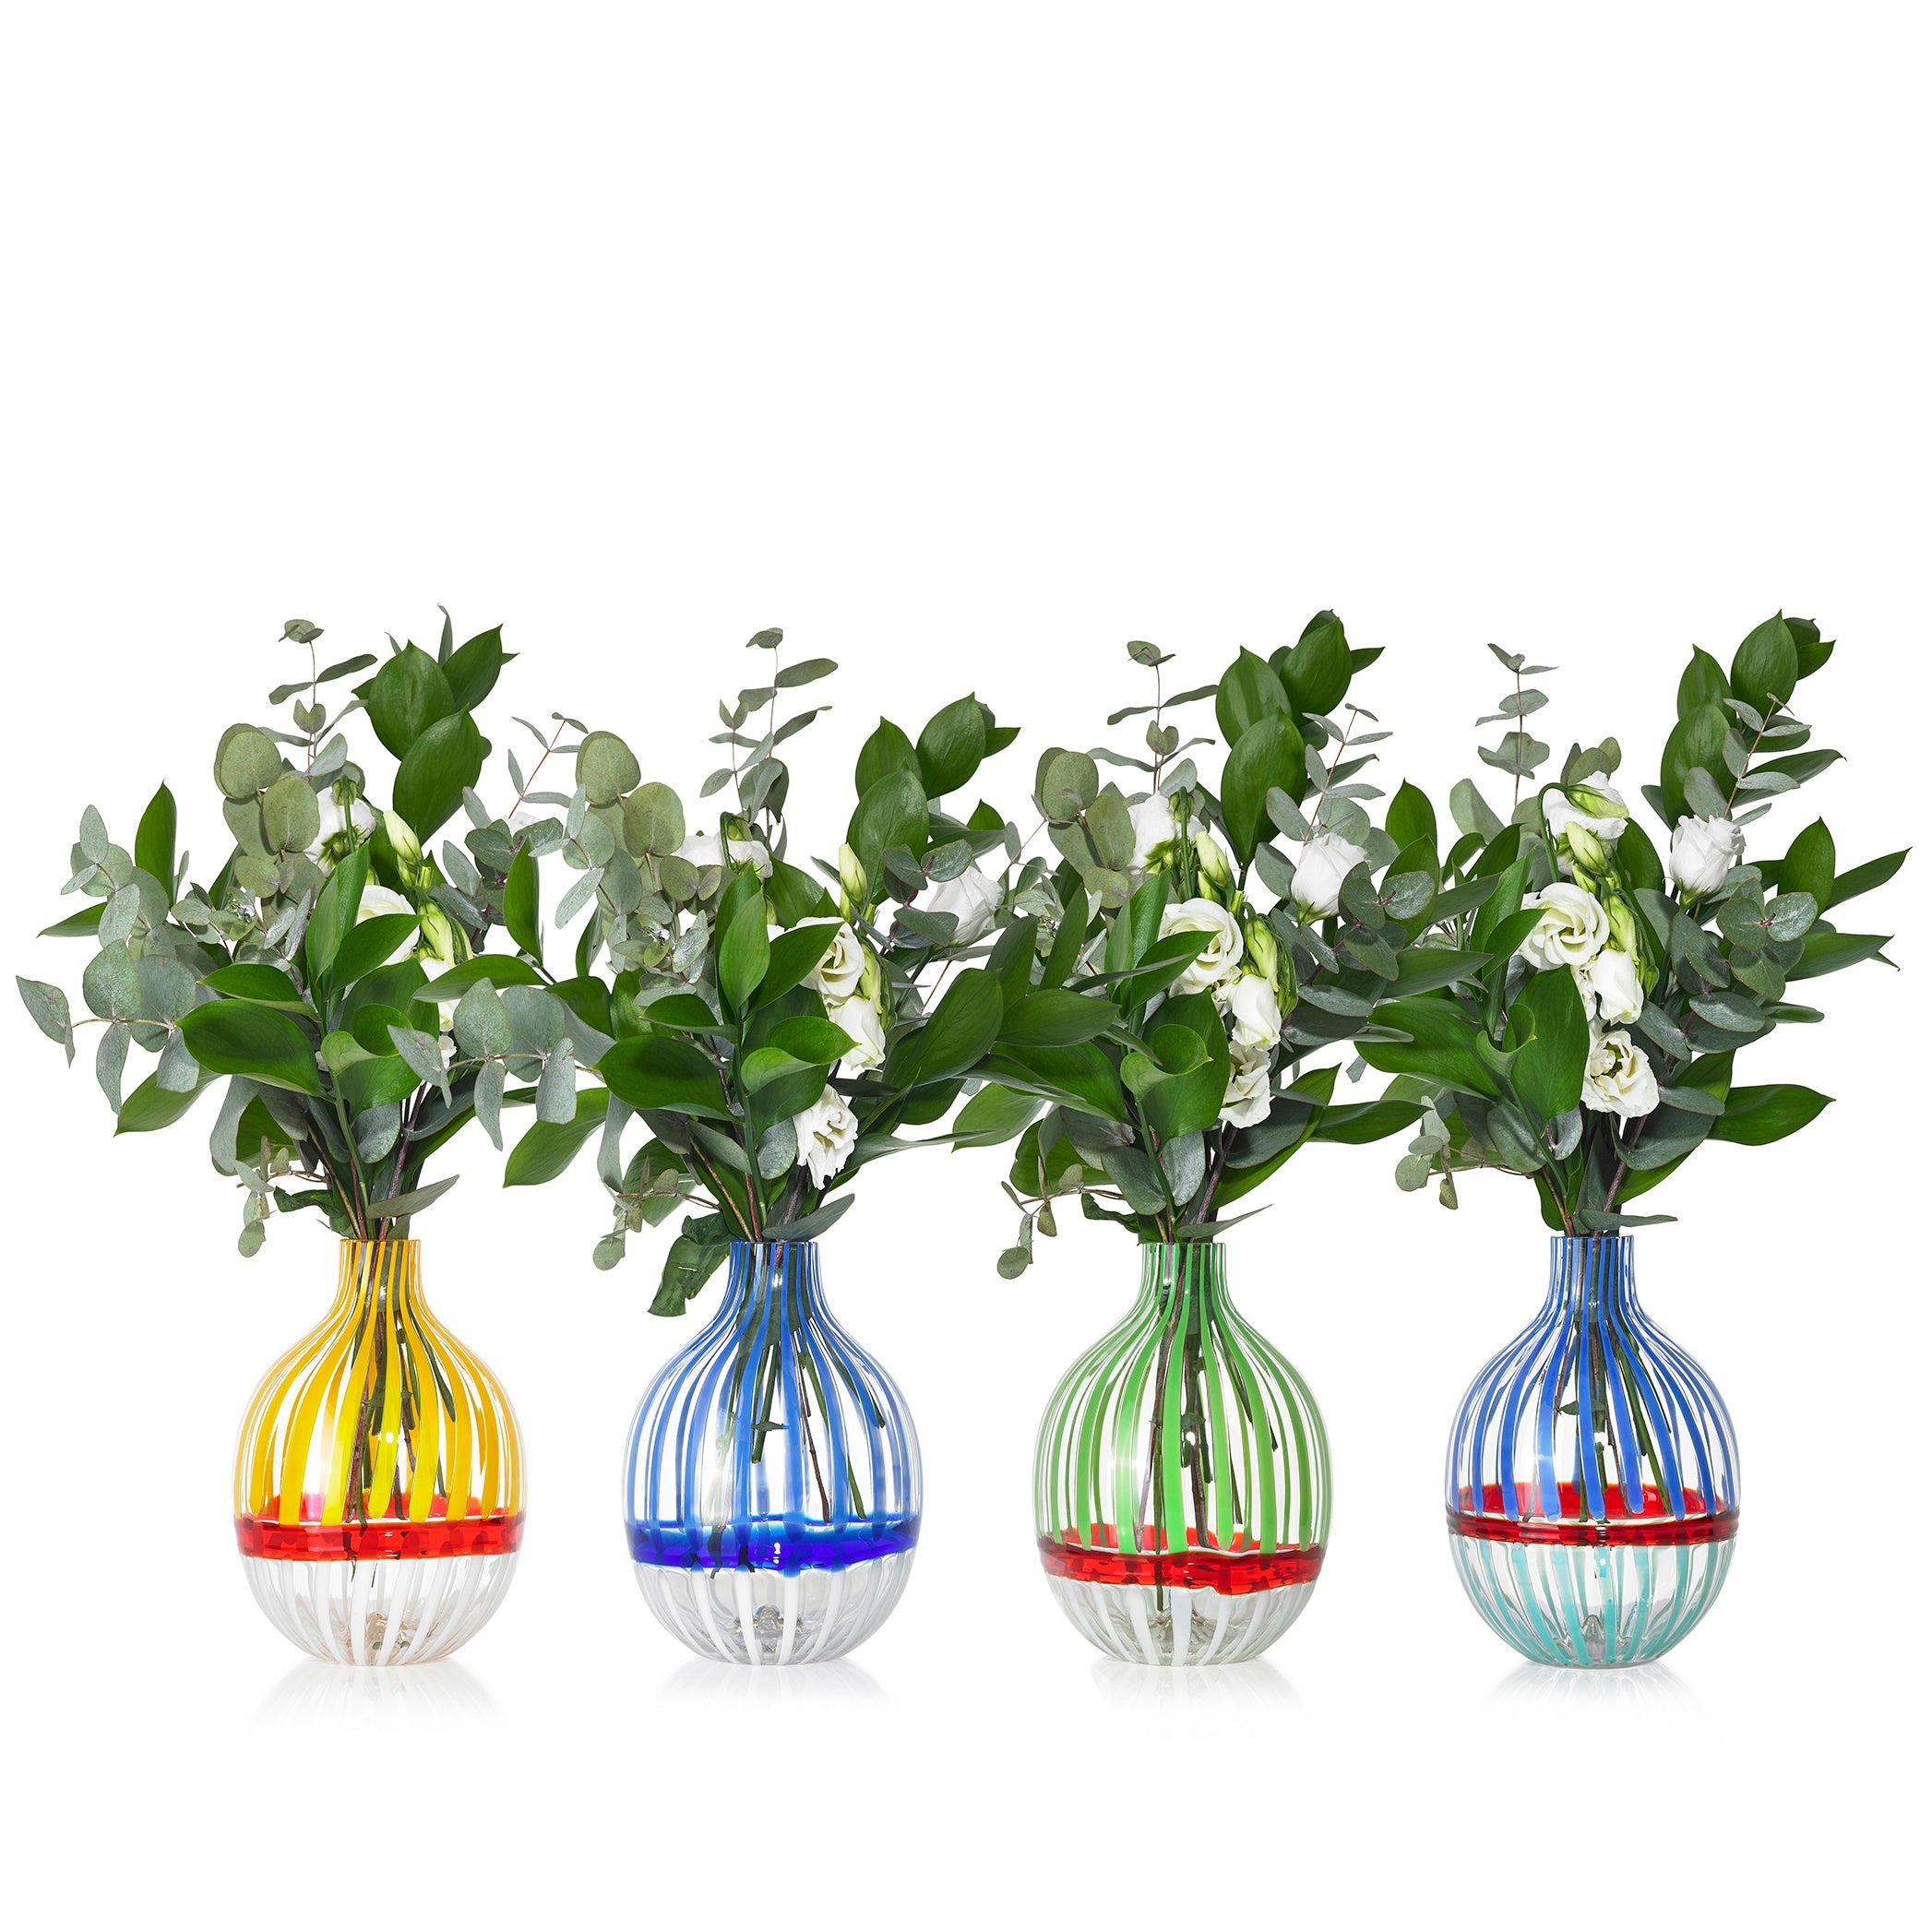 Handblown Double Stripe Glass Vase in Midnight Blue & White, 18cm